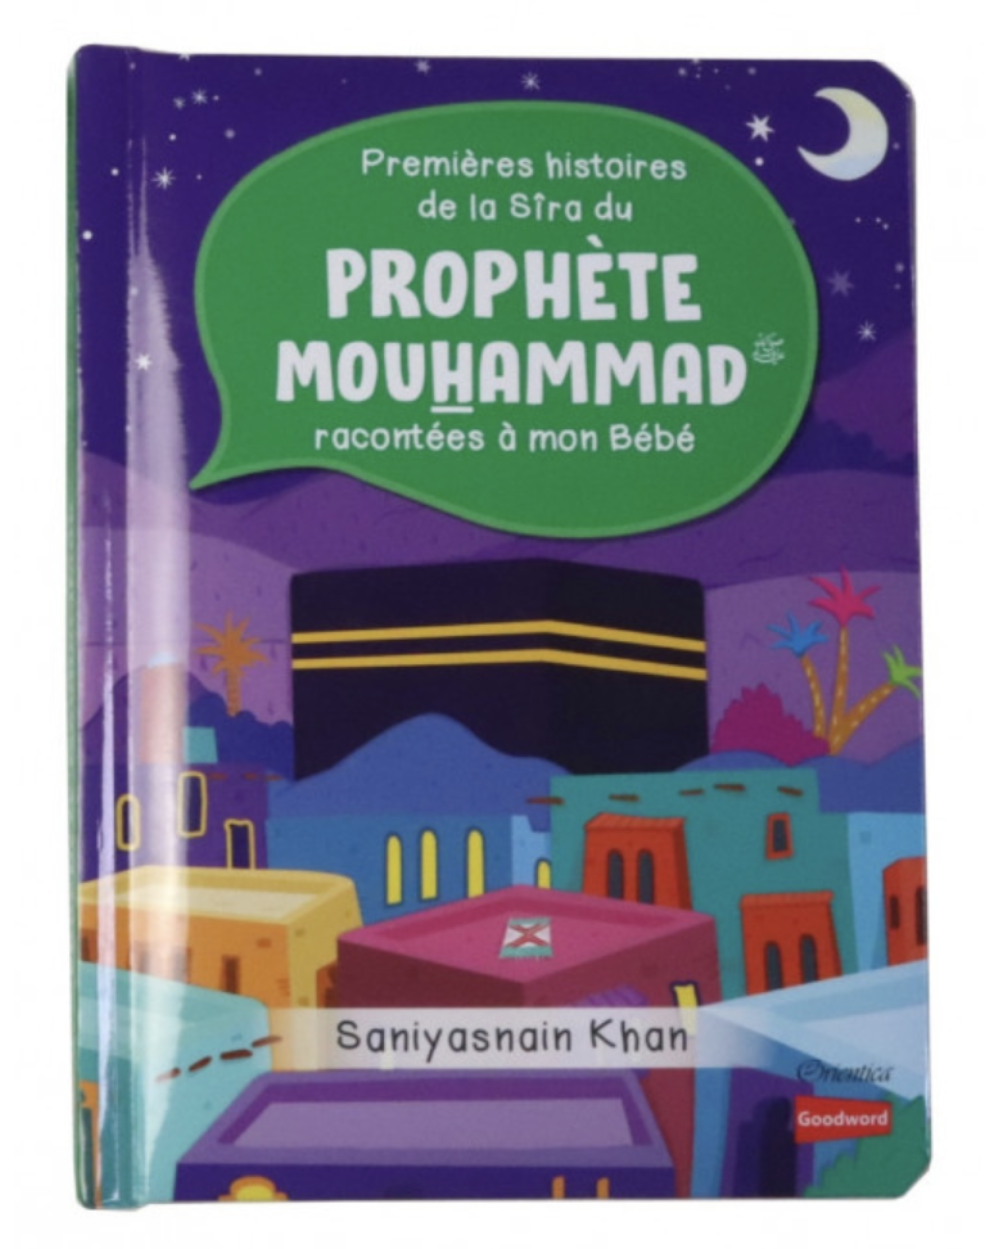 Premières histoires de la Sira du Prophète Mouhammad